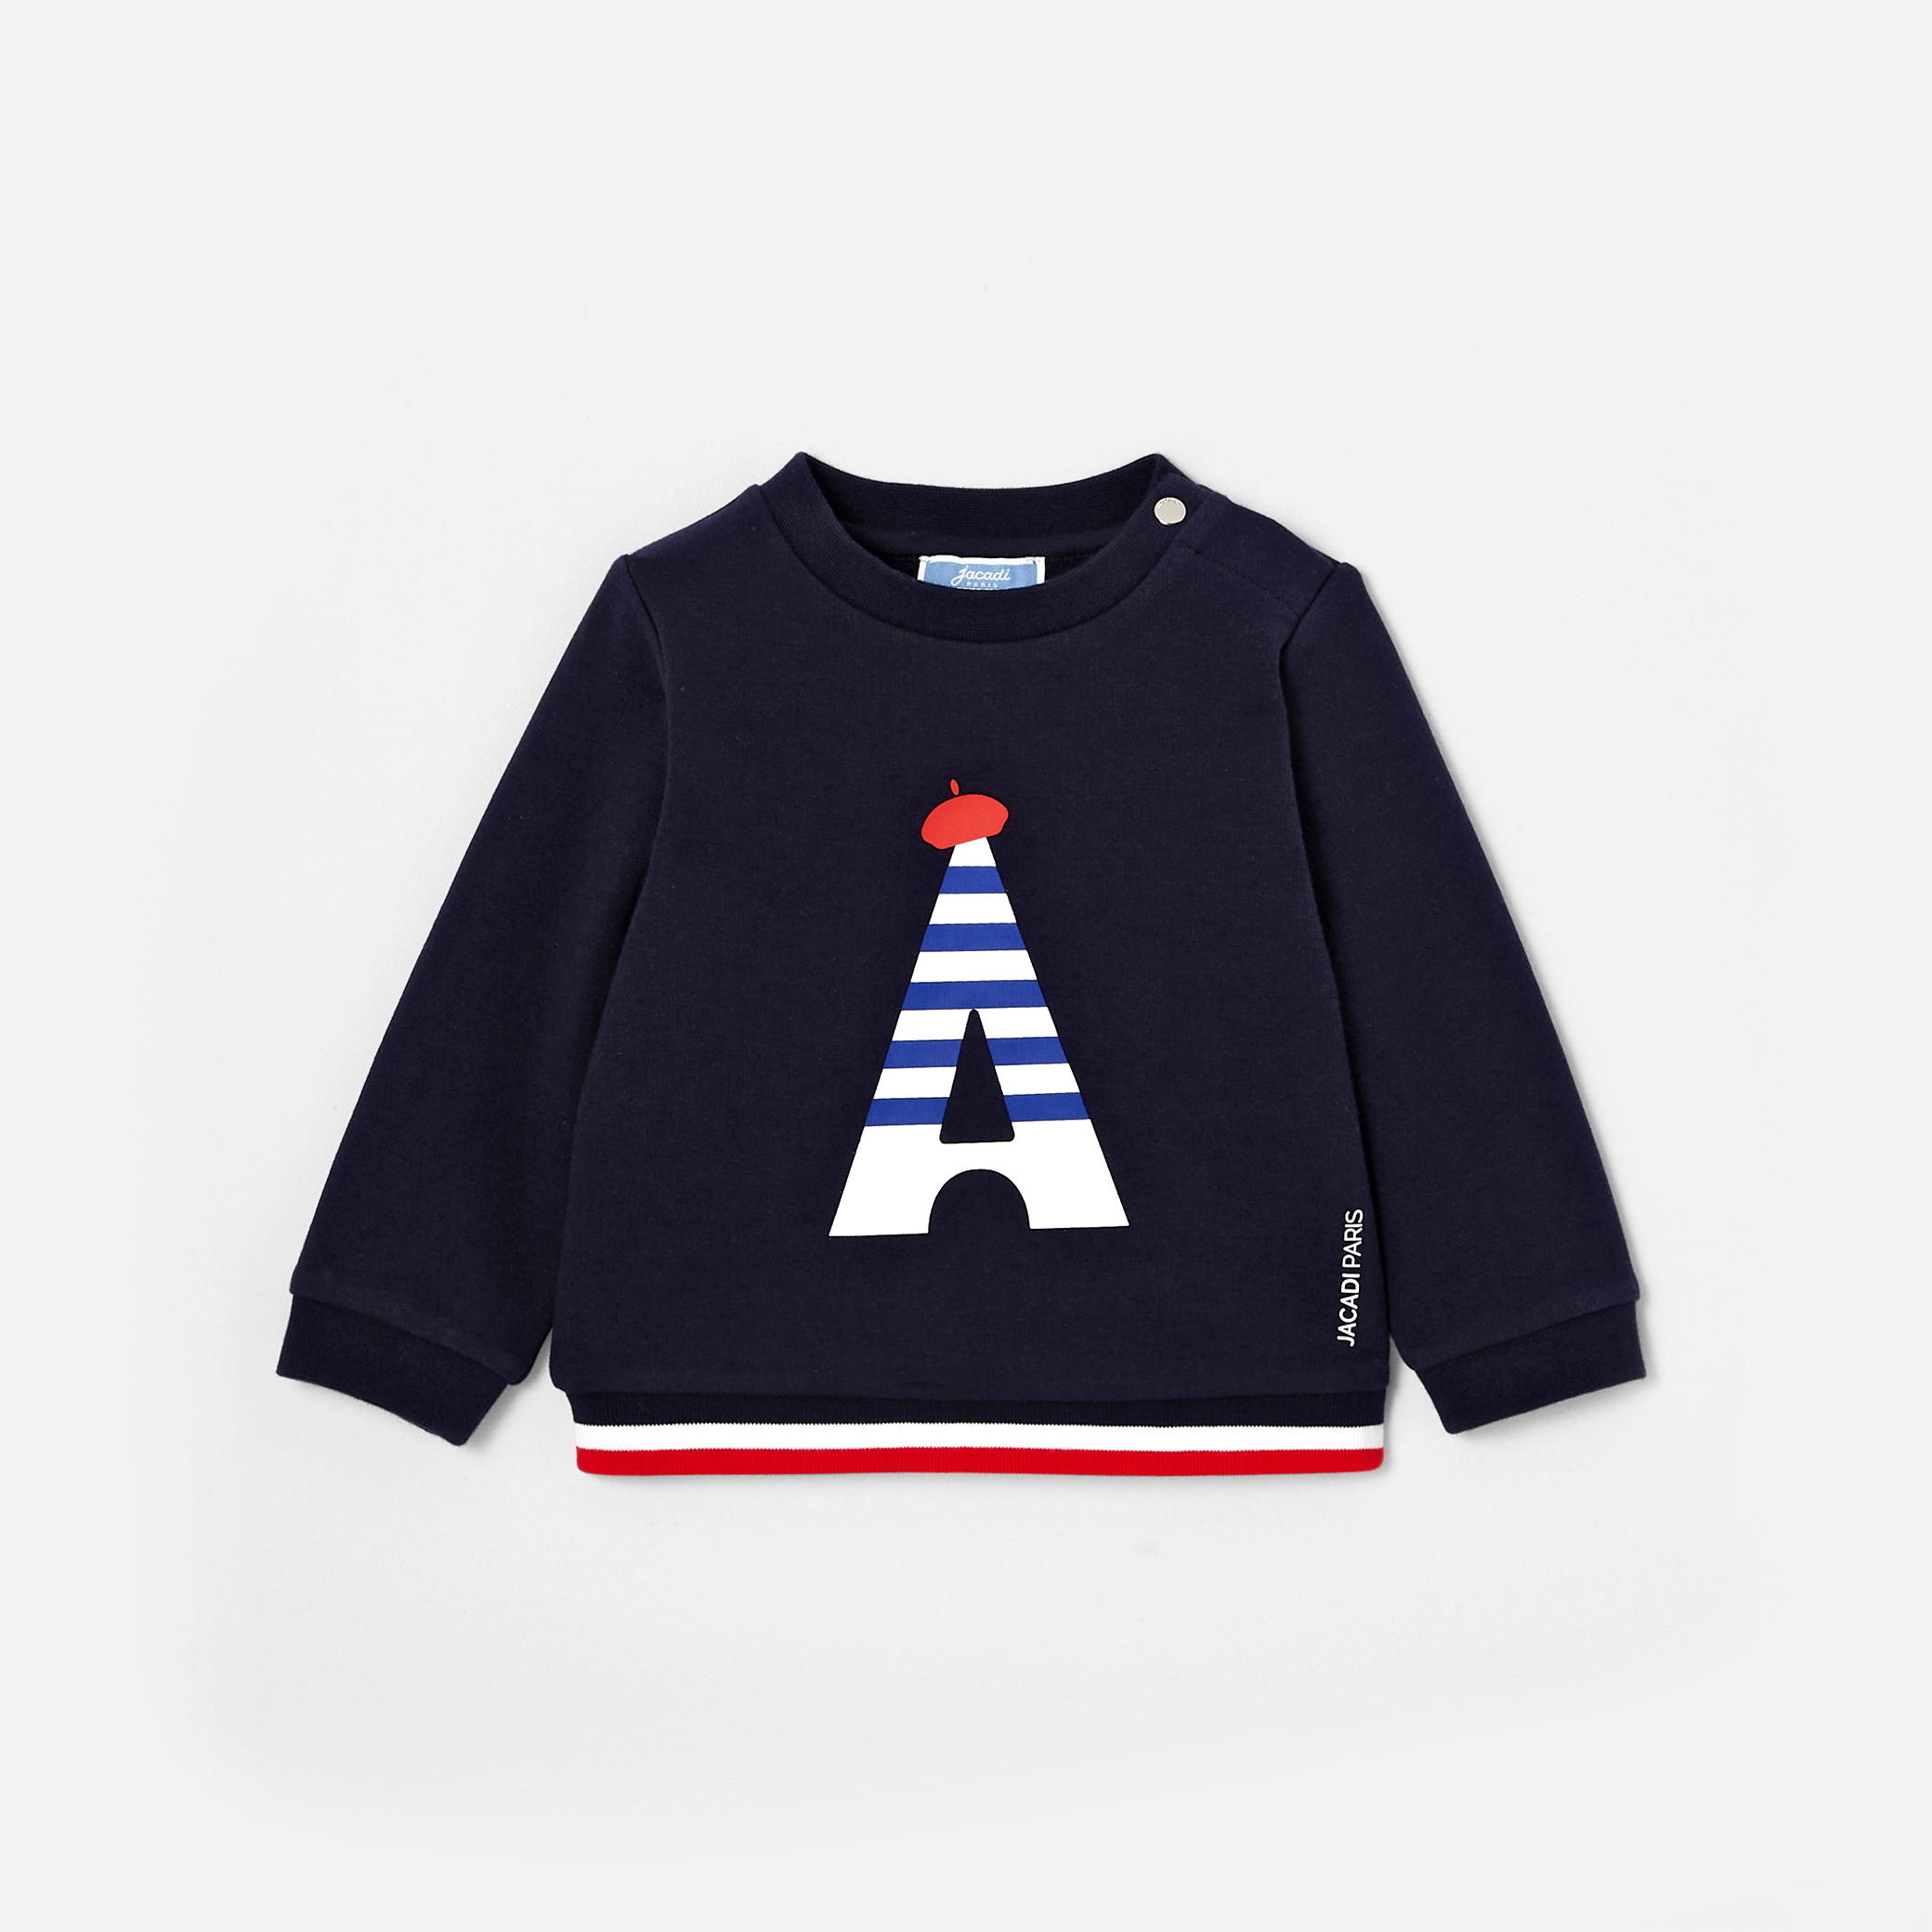 Toddler boy sweatshirt